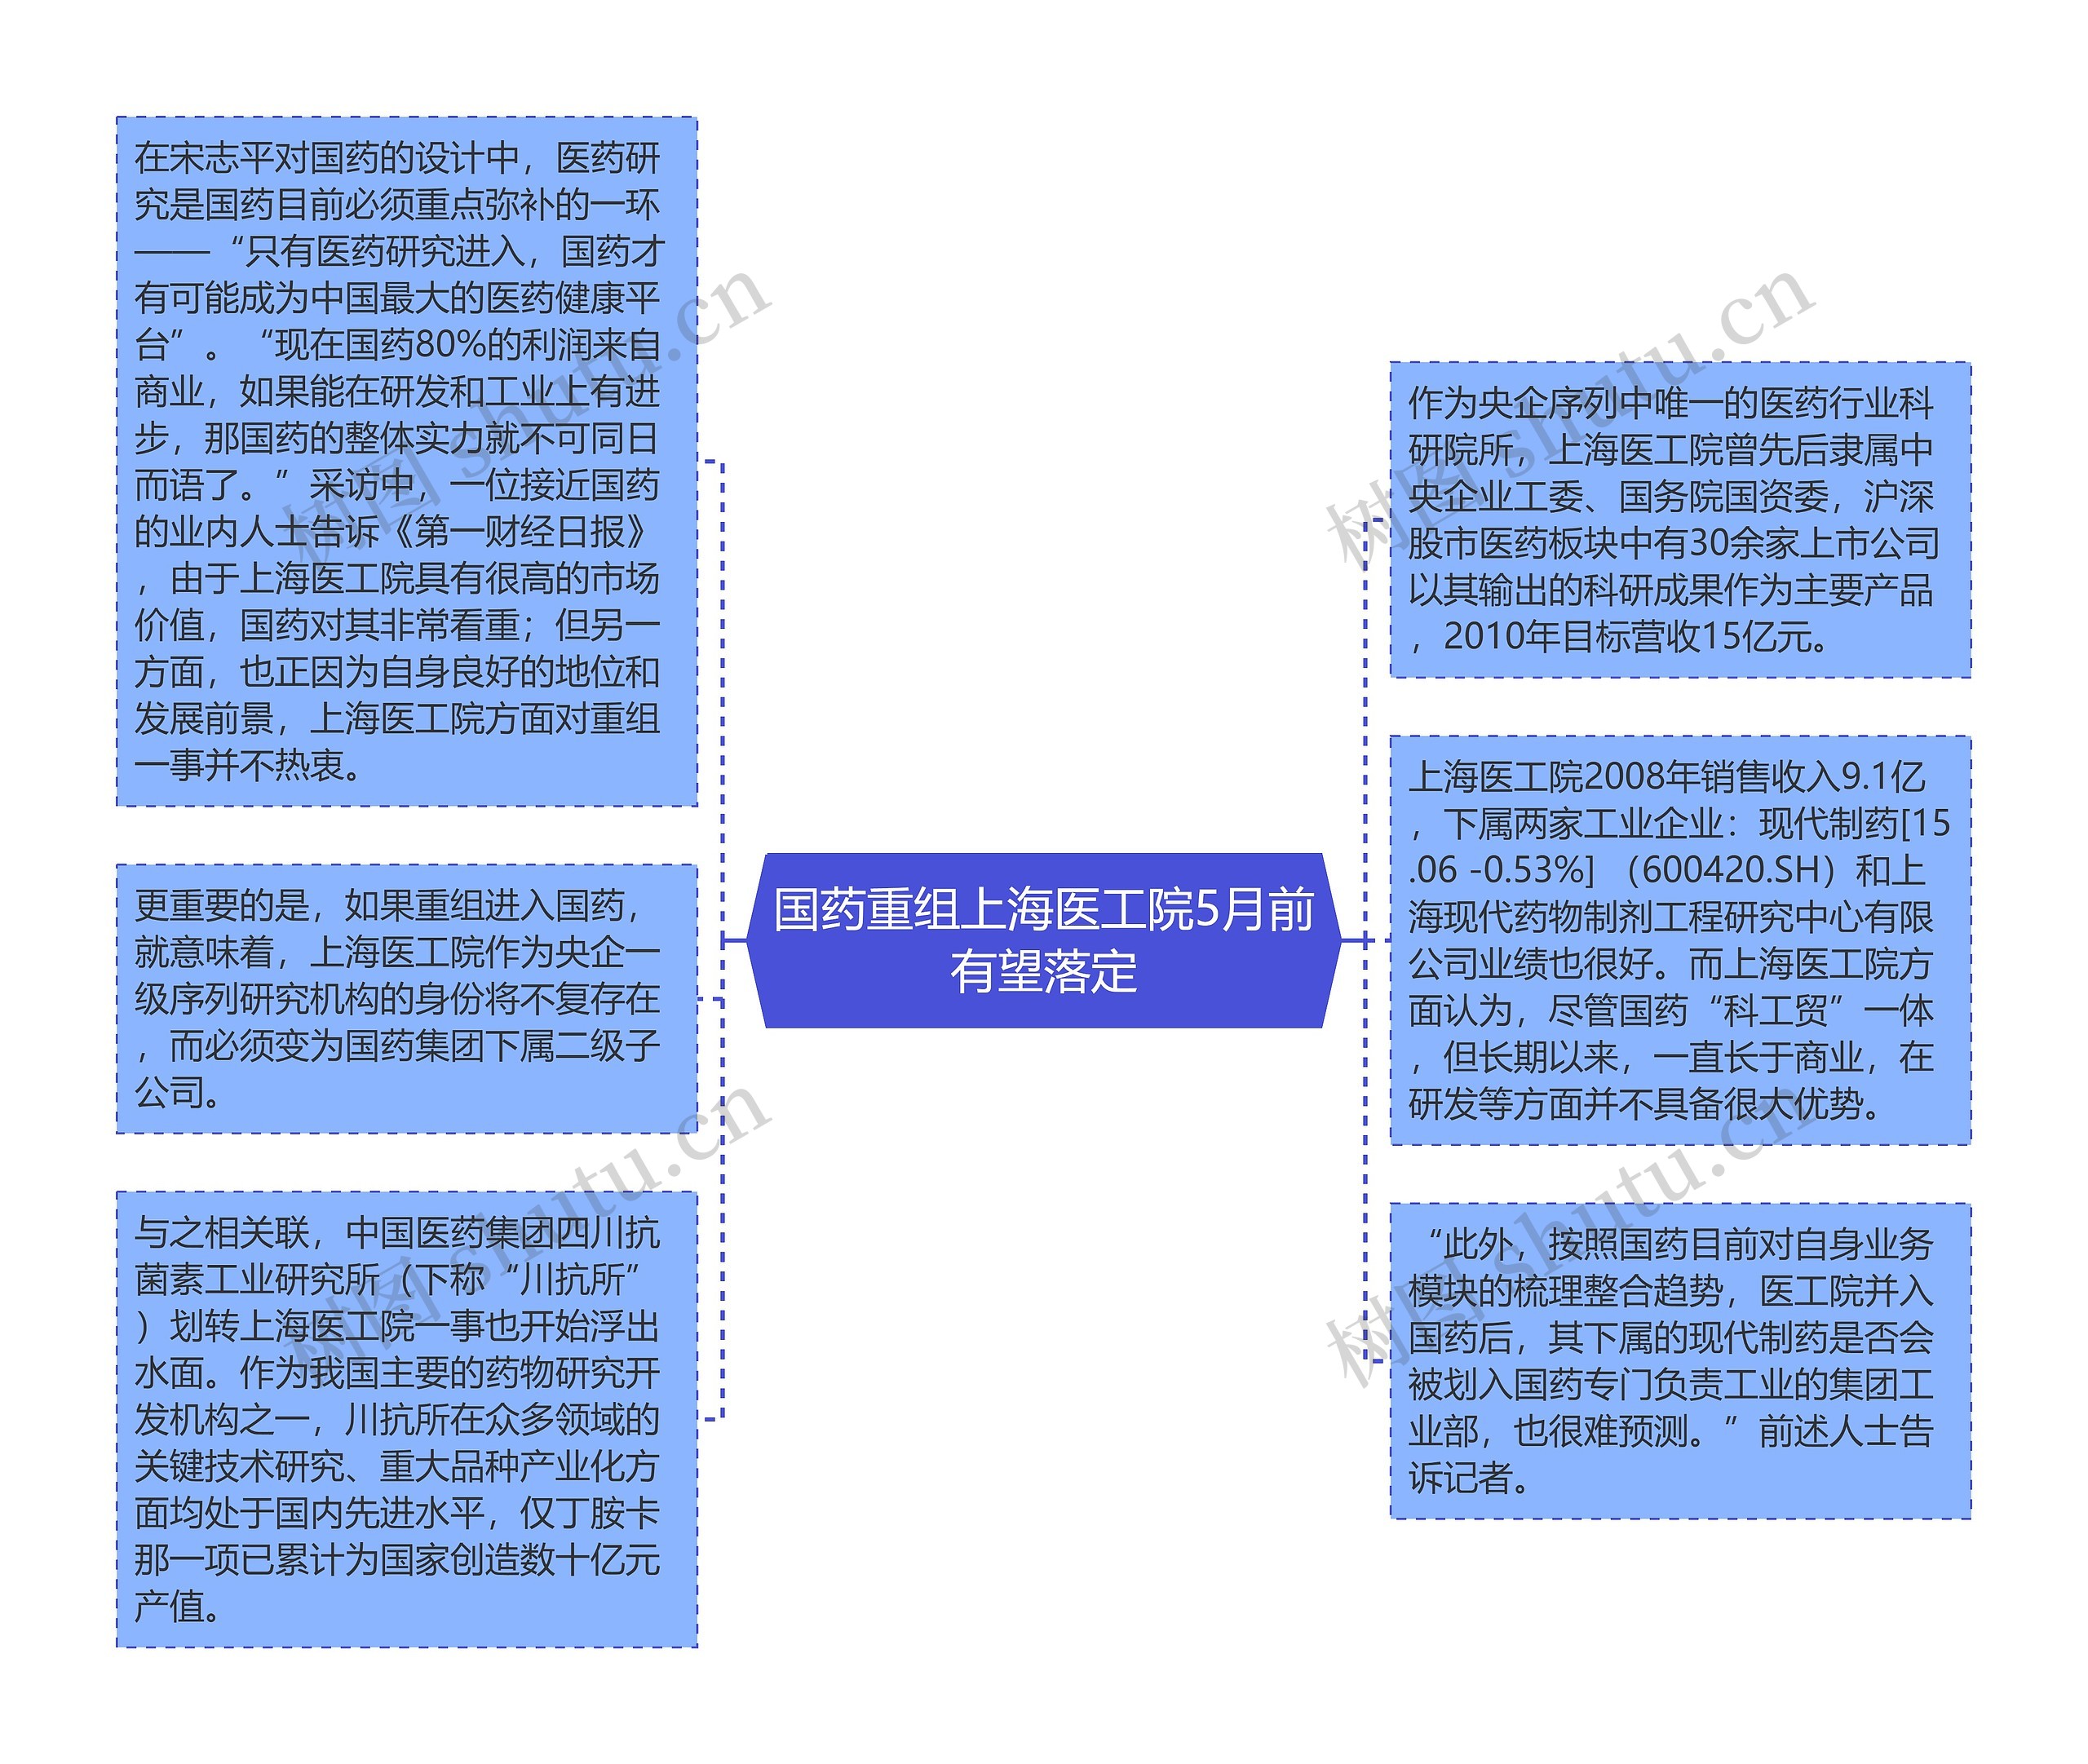 国药重组上海医工院5月前有望落定